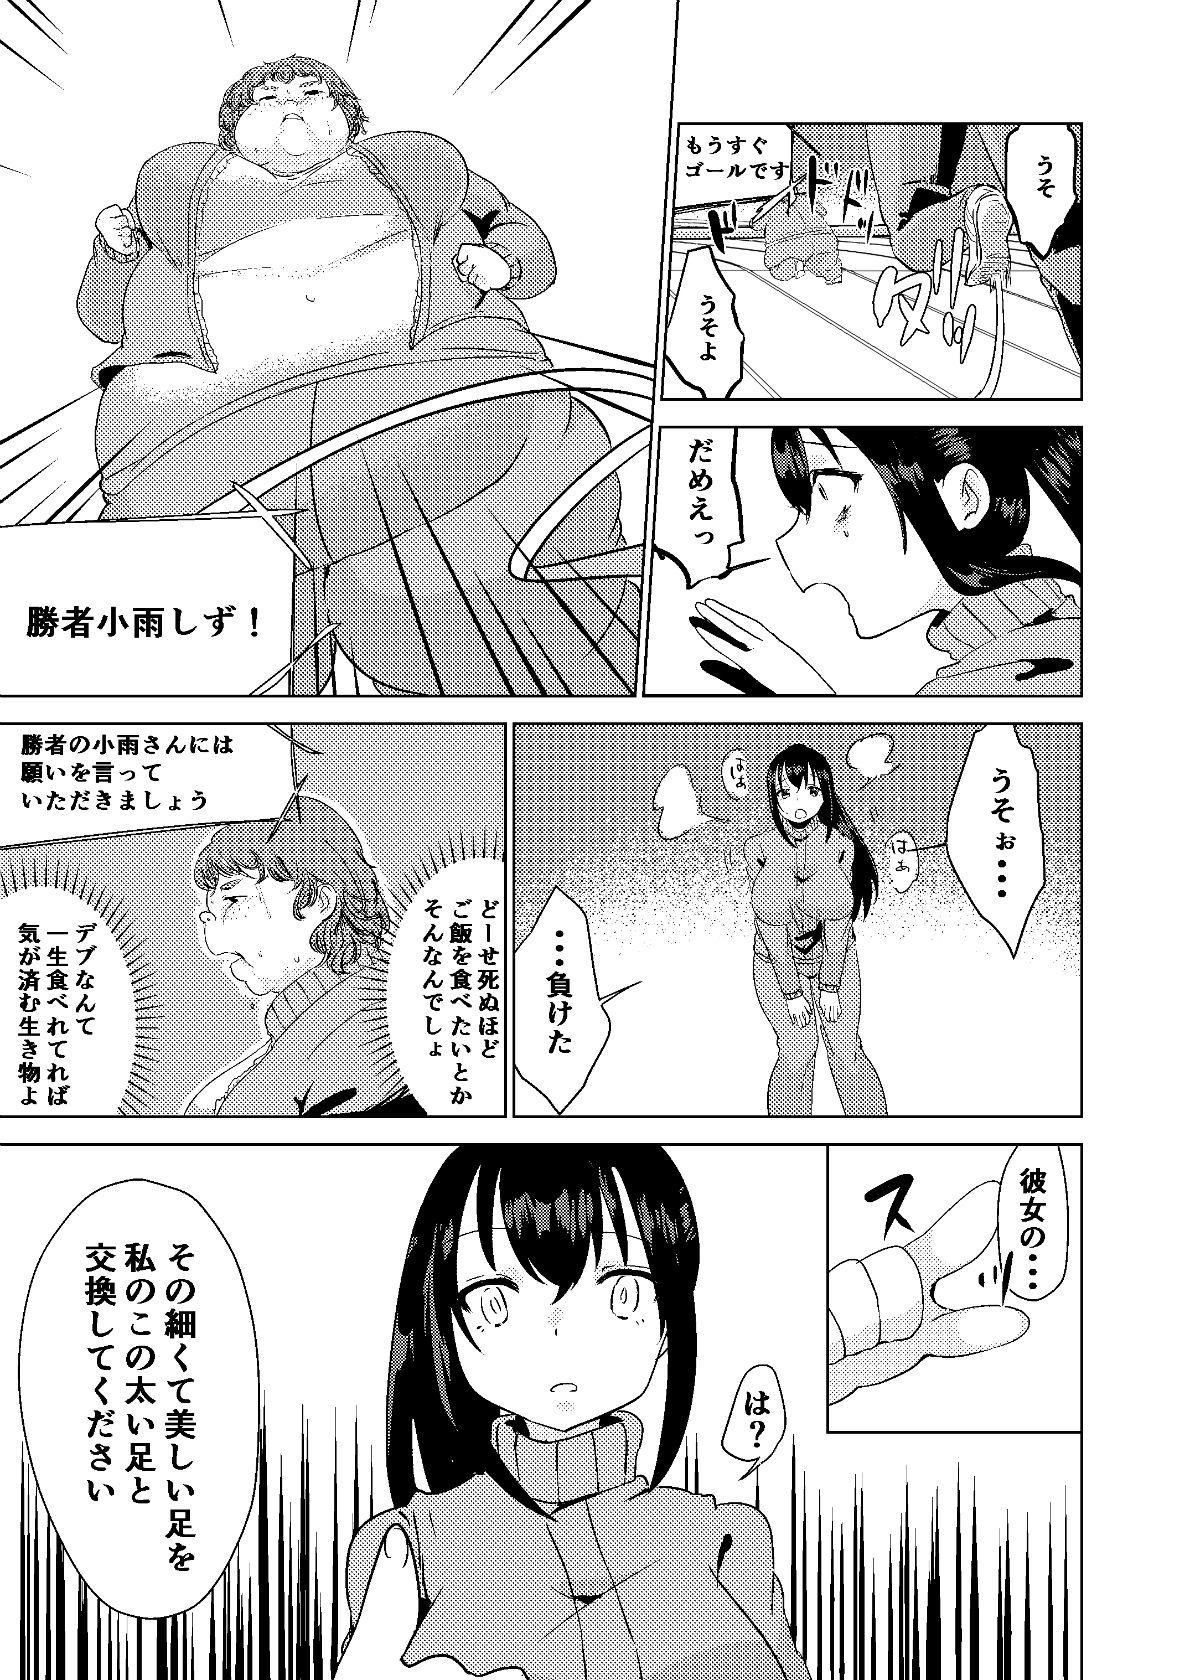 Bitch Kyou kara Watashi wa Anata ni Naru. - Original Bubble - Page 11